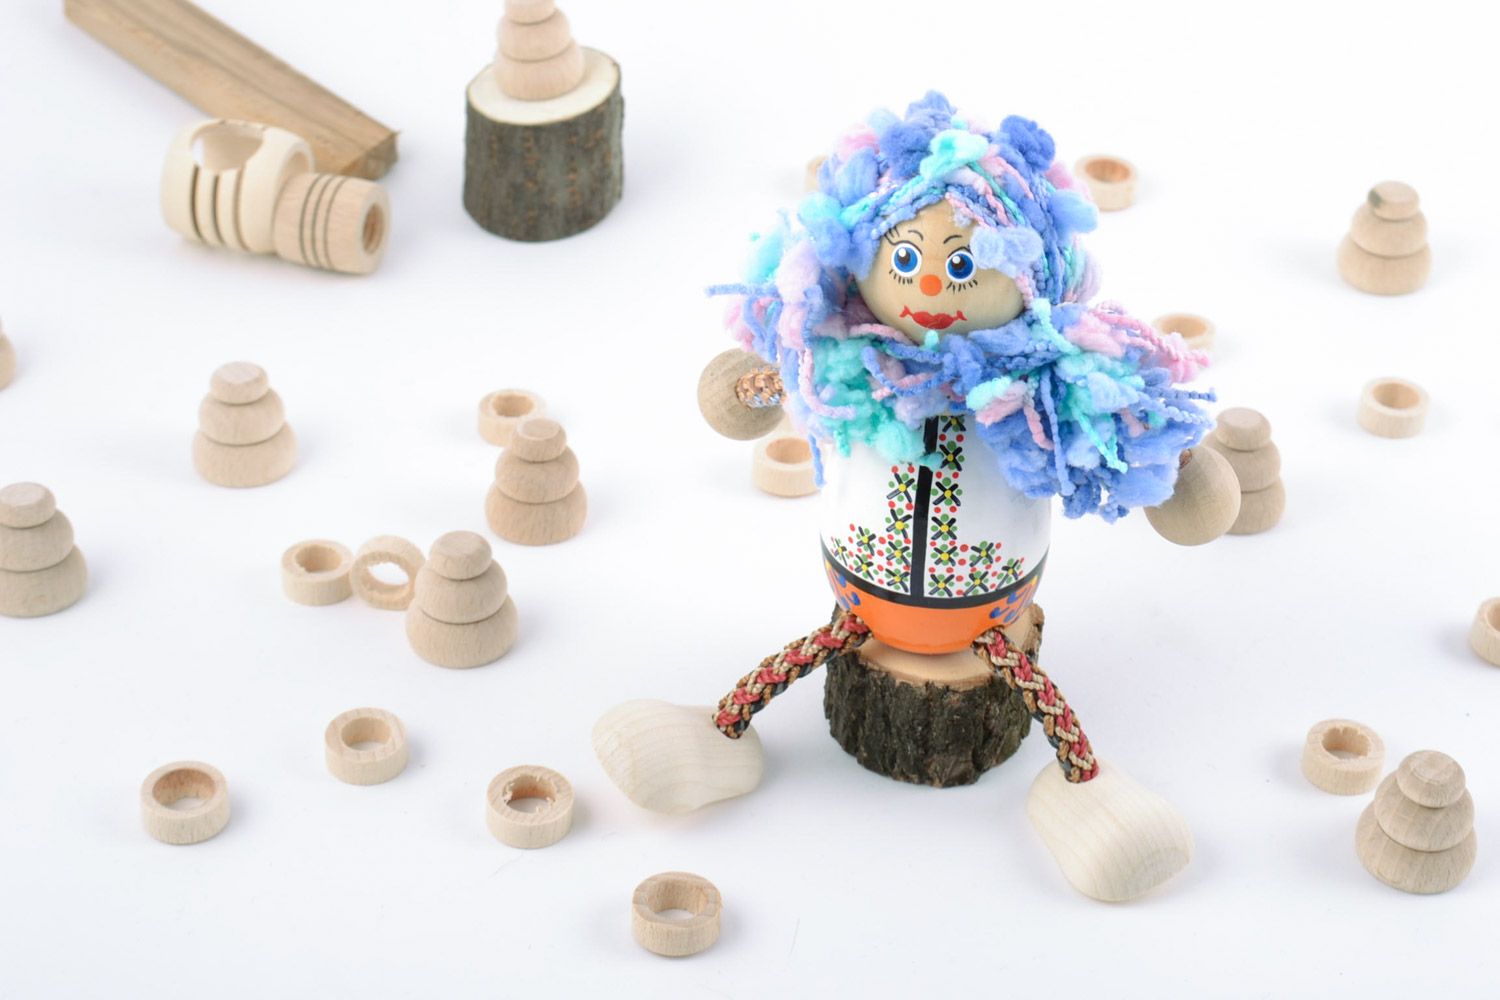 Расписная деревянная игрушка для ребенка ручной работы в виде девочки яркая фото 1